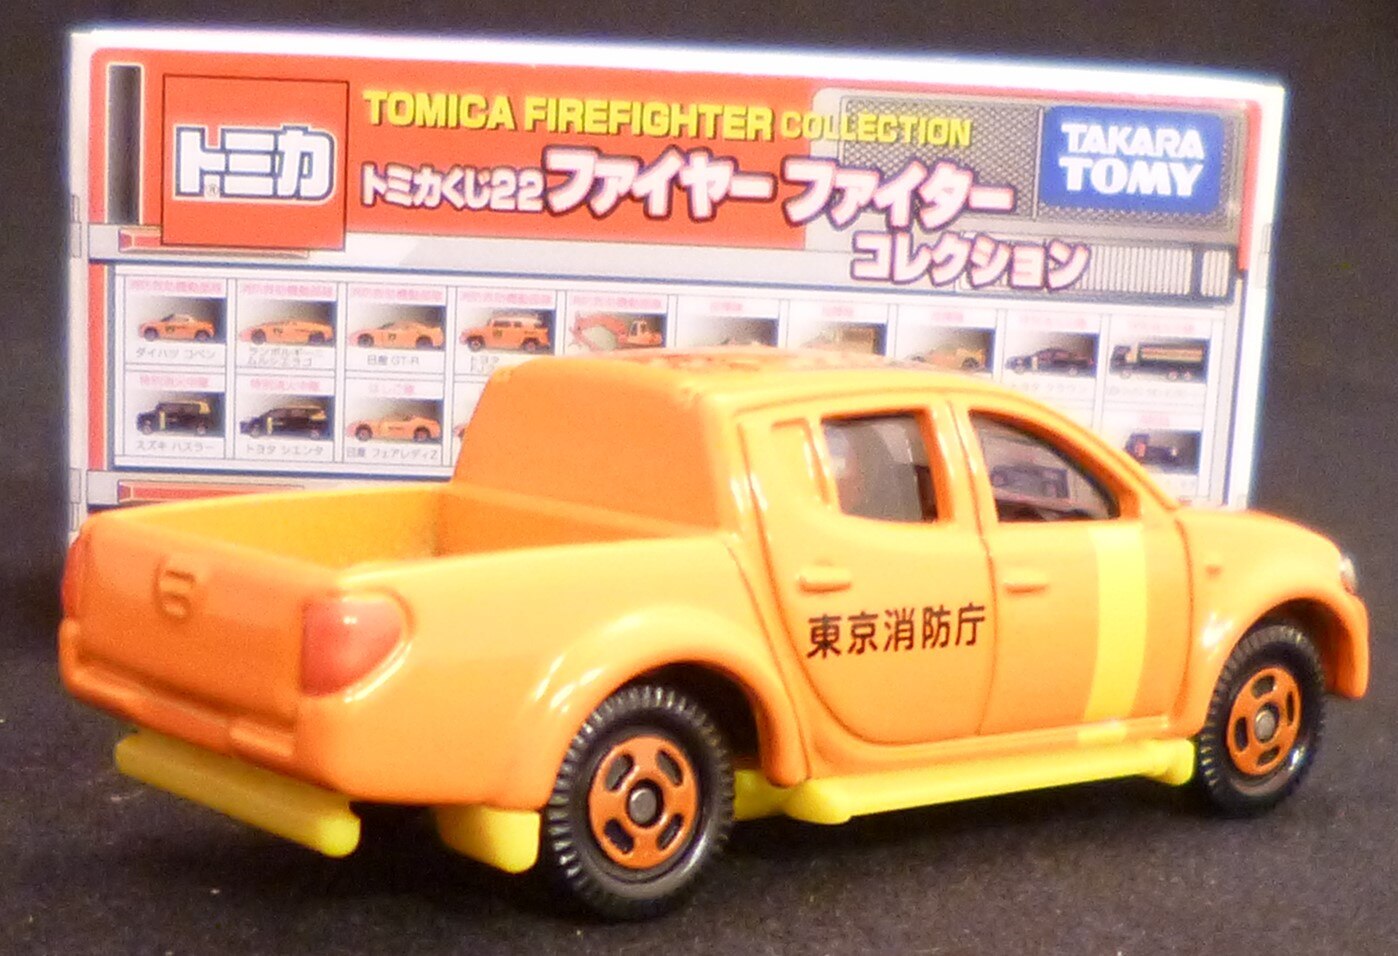 トミカ トミカくじ22 ファイヤーファイターコレクション トライトン